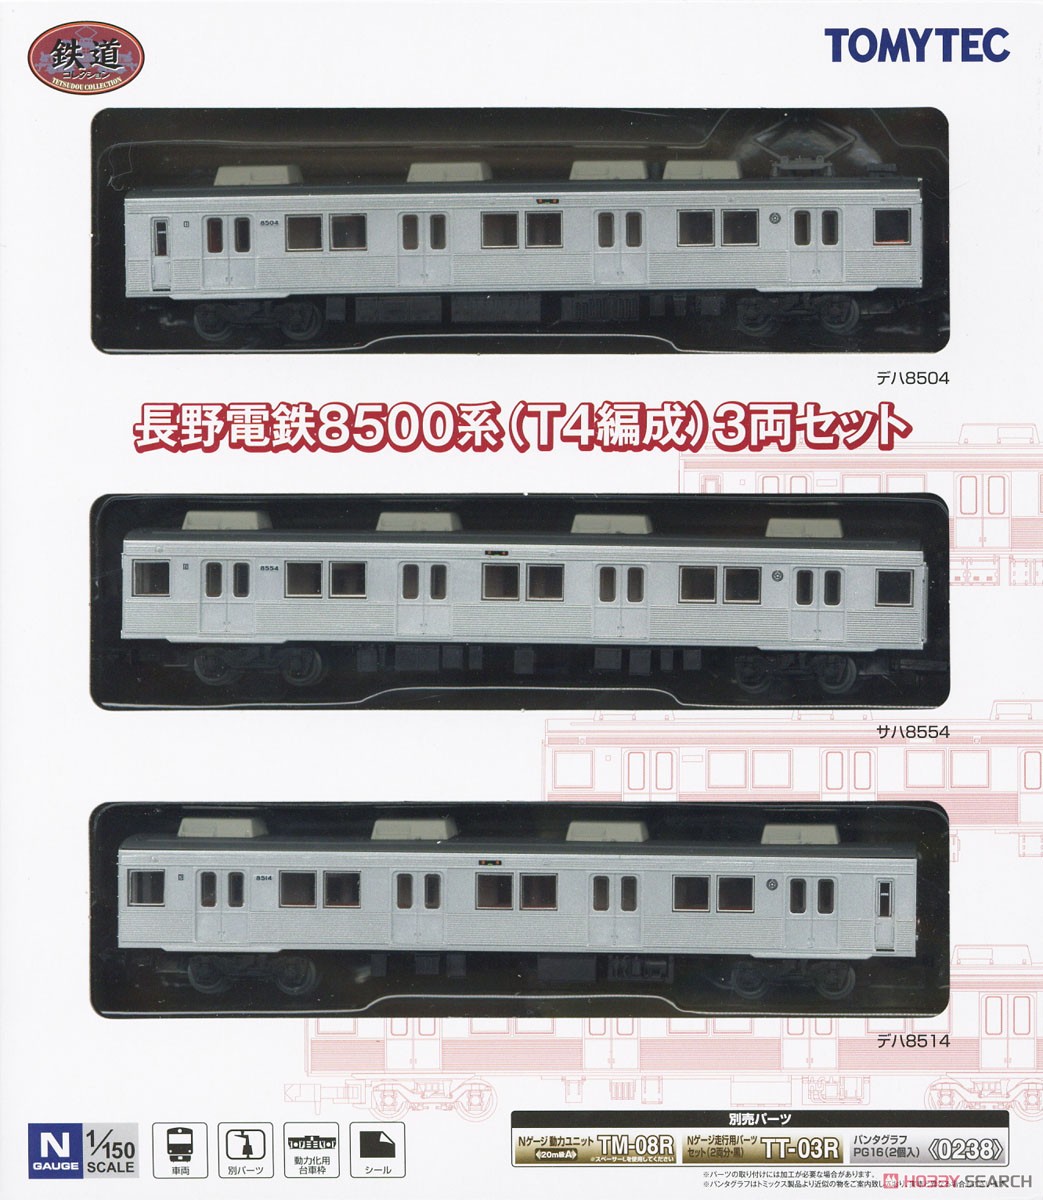 鉄道コレクション 長野電鉄 8500系 (T4編成) (3両セット) (鉄道模型) パッケージ1